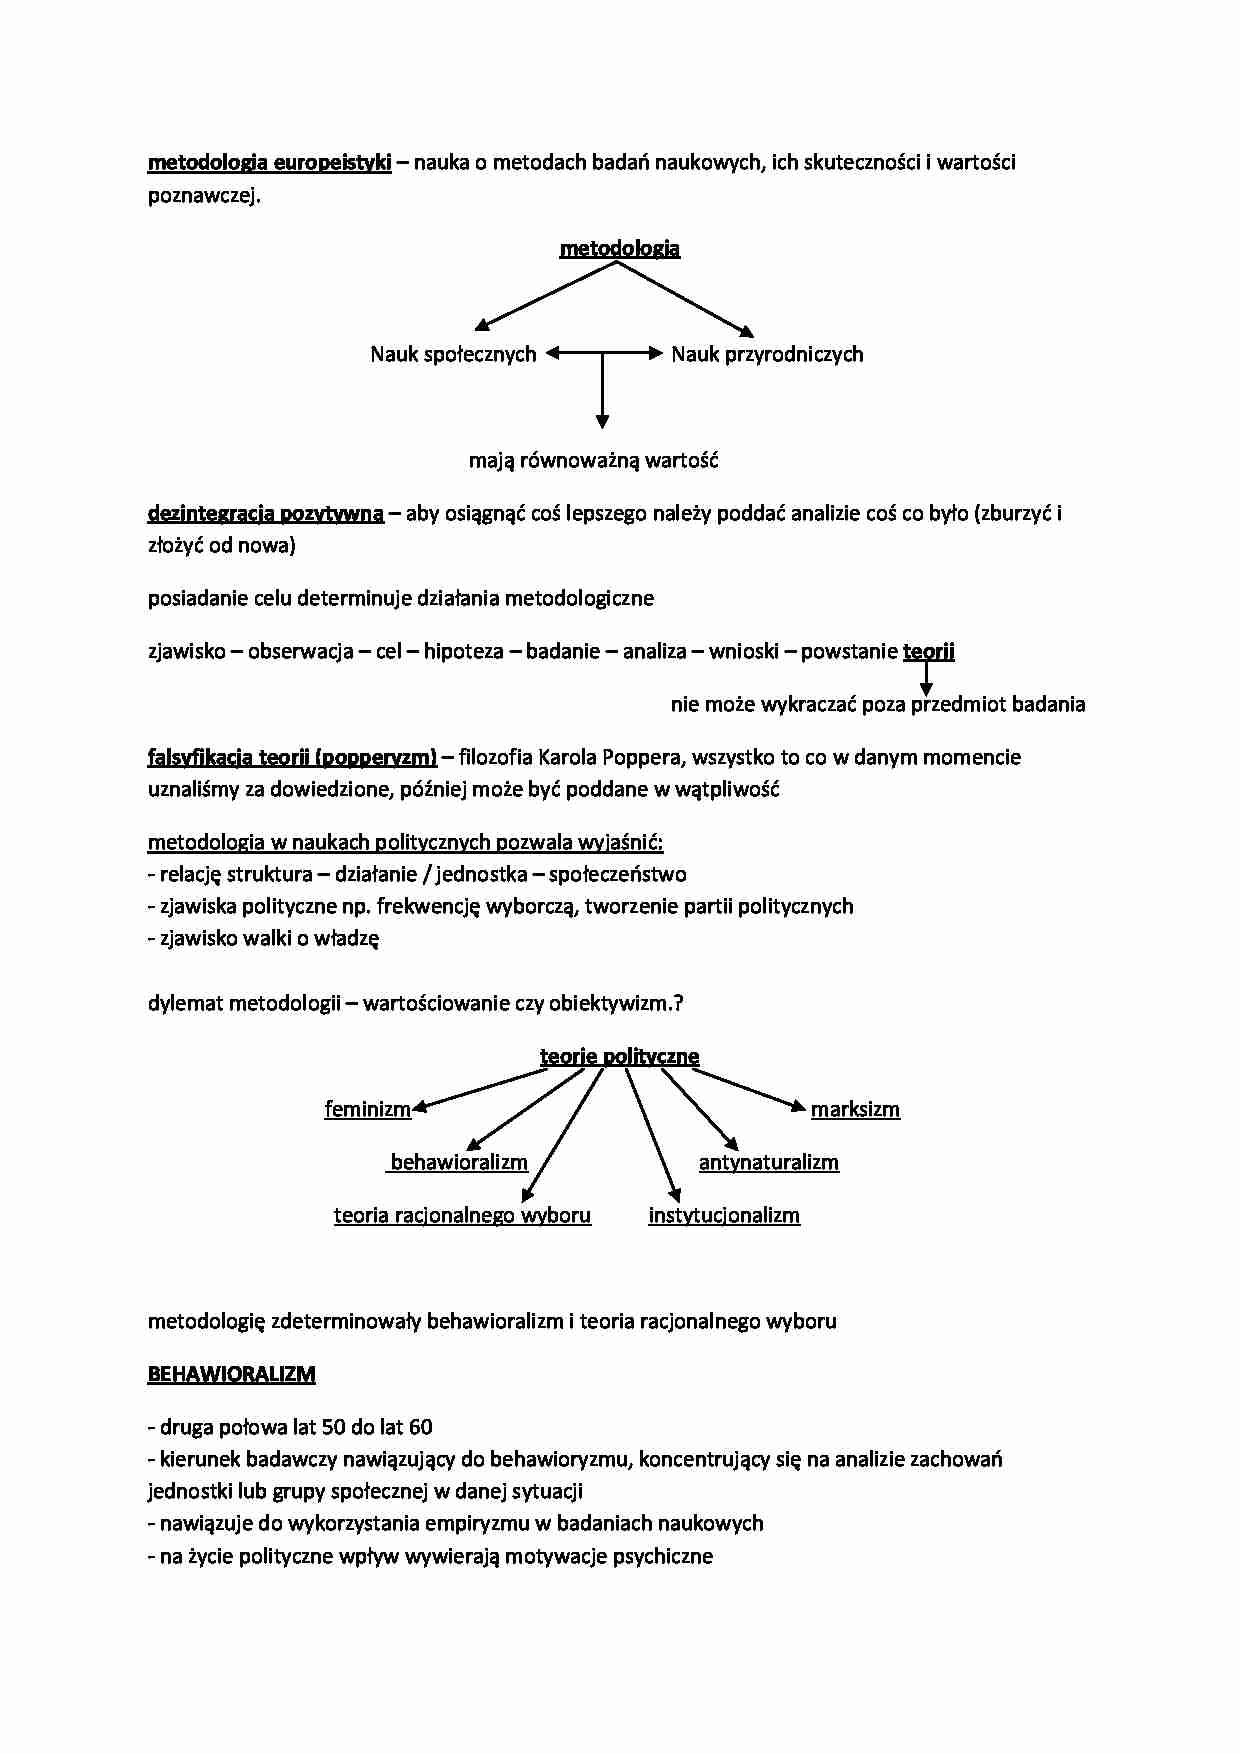 Metodologia europeistyki - skrypt - strona 1